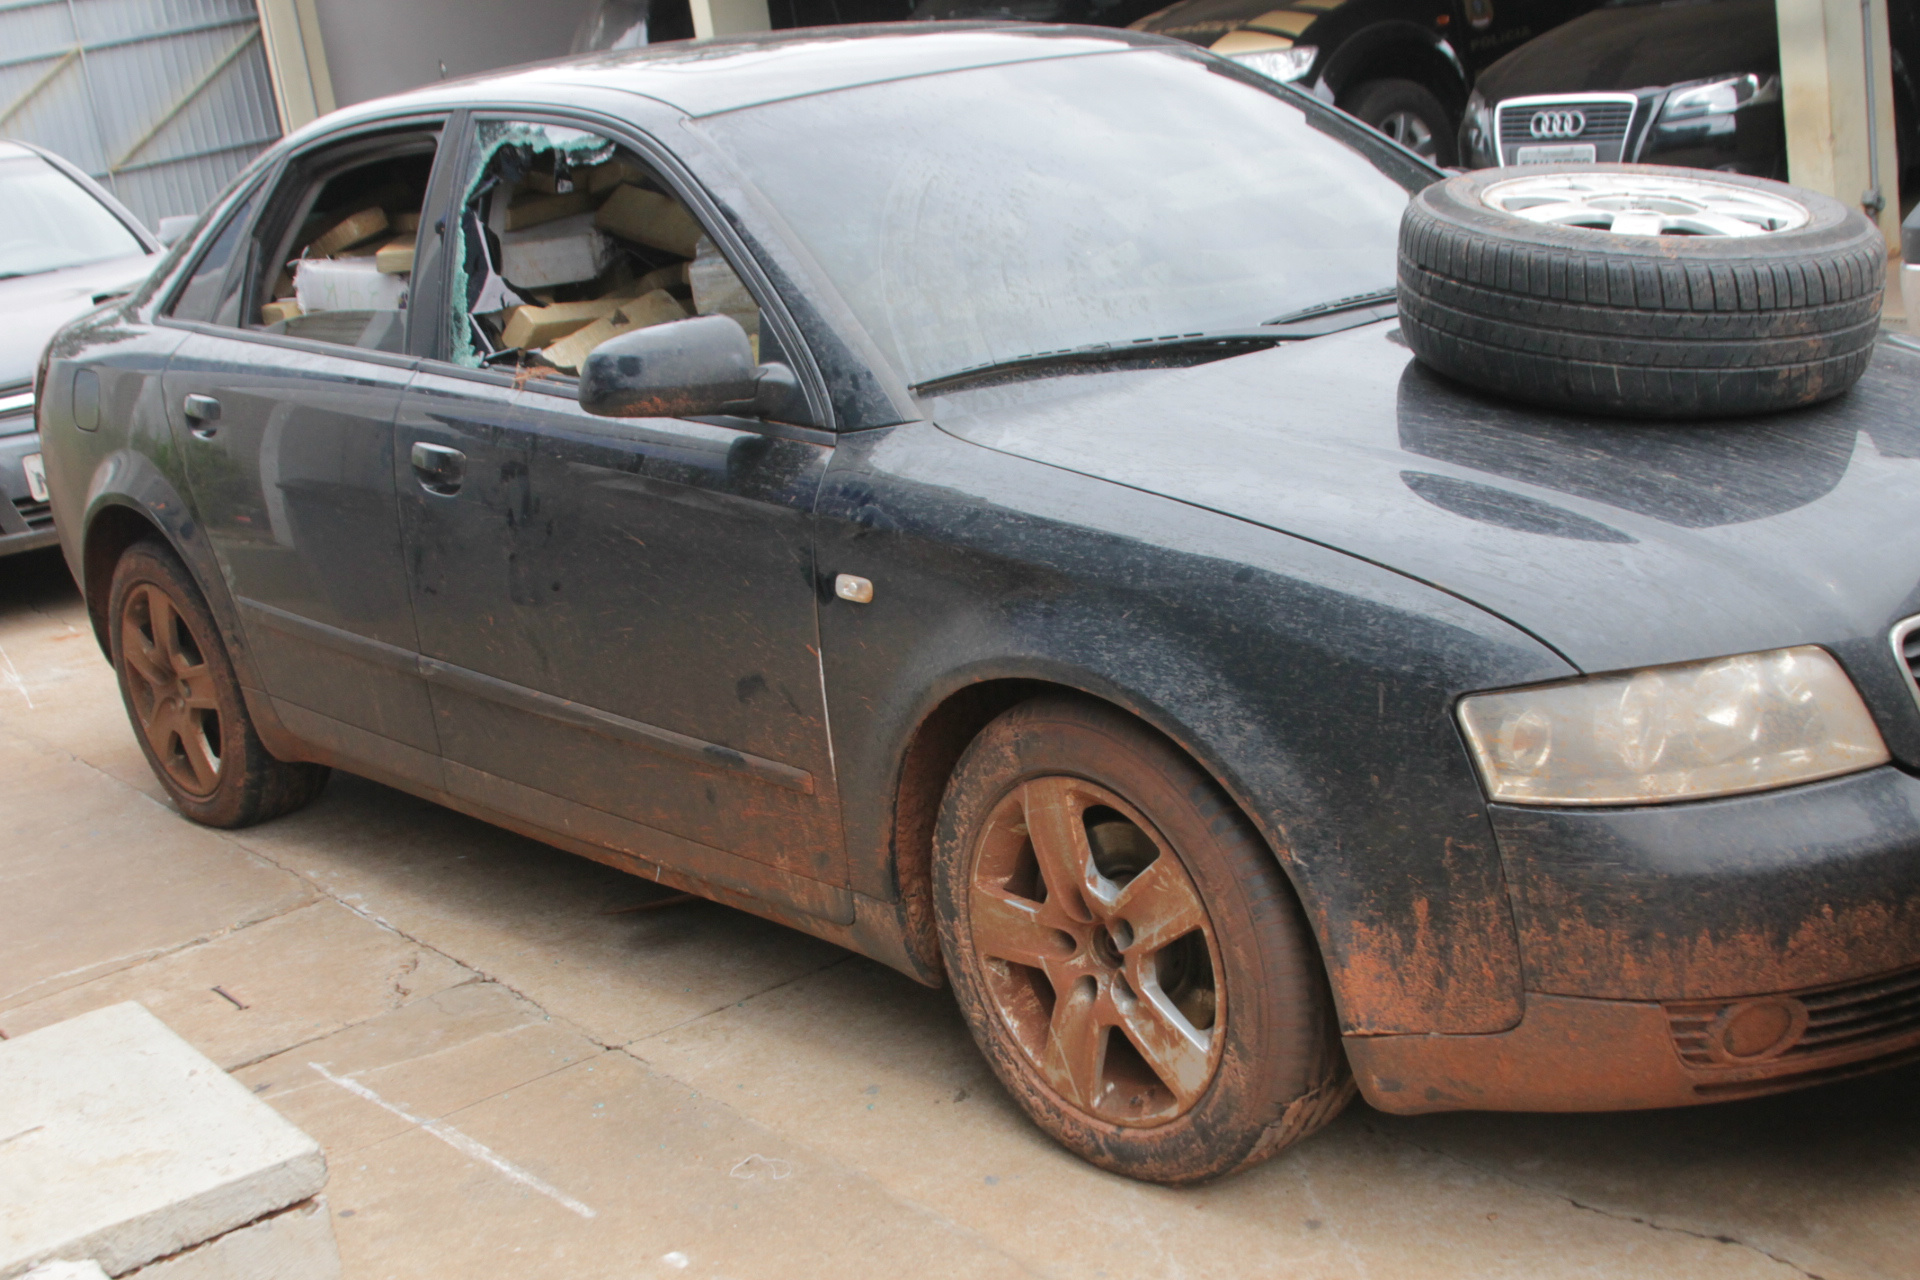 O automóvel de luxo ficou todo sujo de lama devido ao atoleiro, durante a fuga do traficante pela estrada vicinal (Foto: Edivelton Kologi)